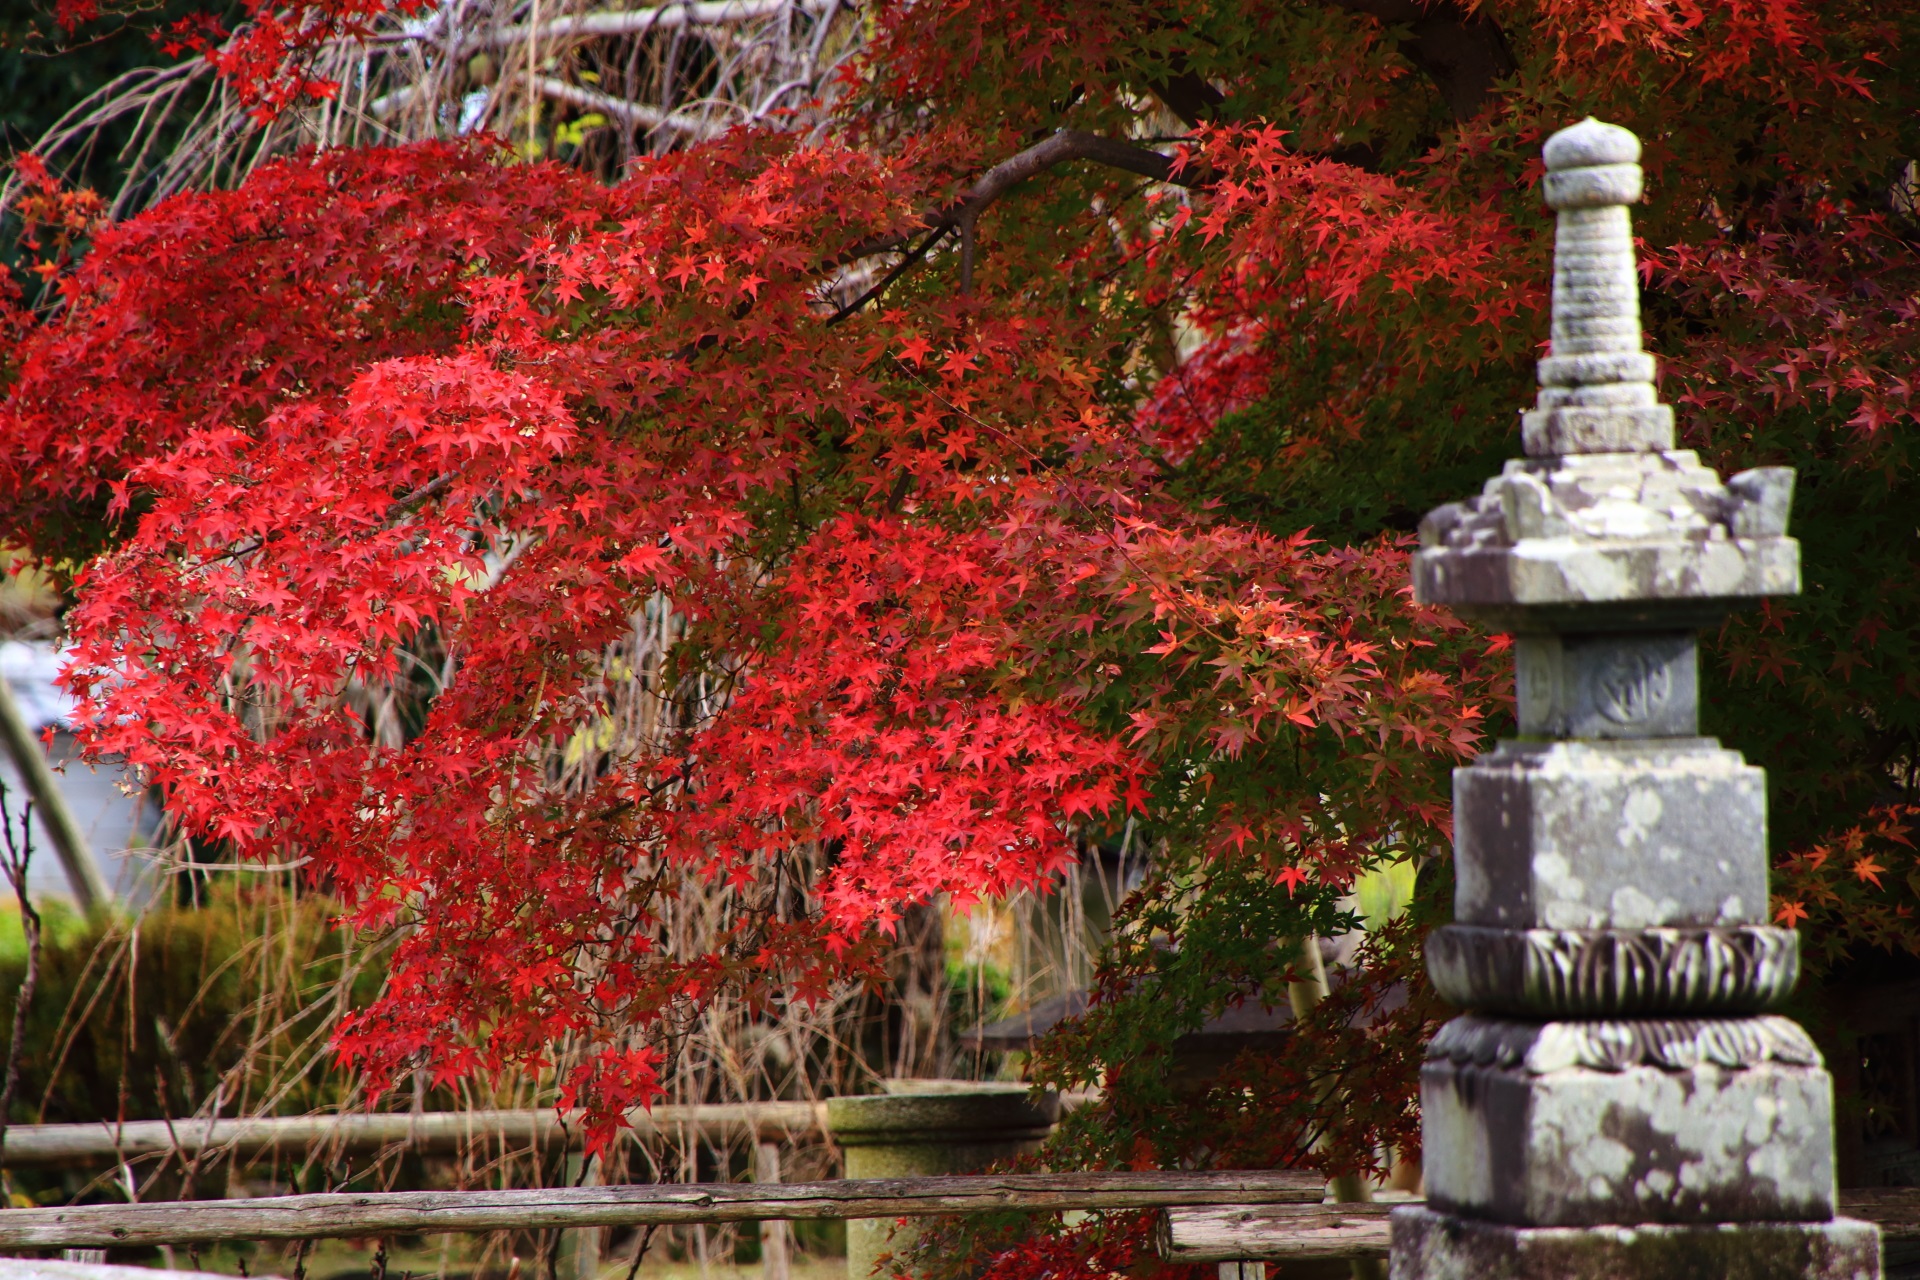 早良親王供養塔と鮮烈な赤さの紅葉